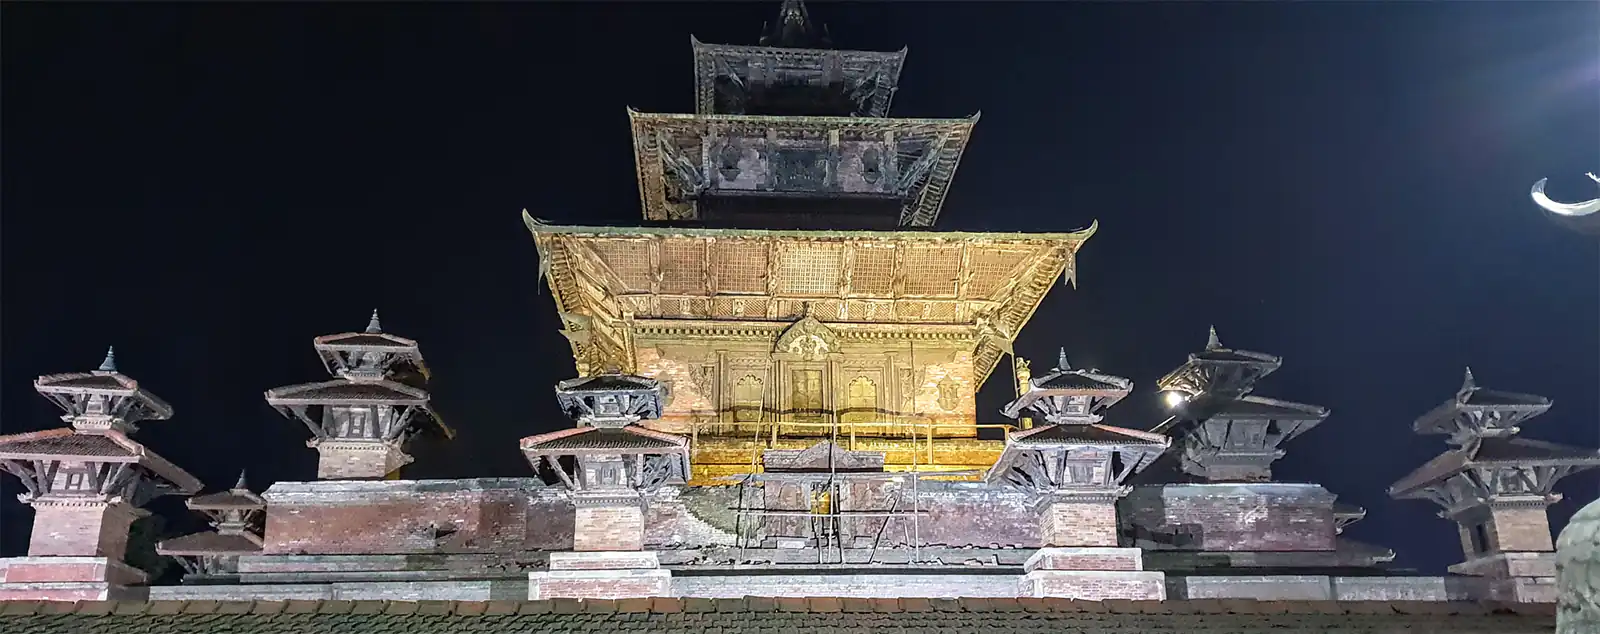 Taleju Bhabani Temple